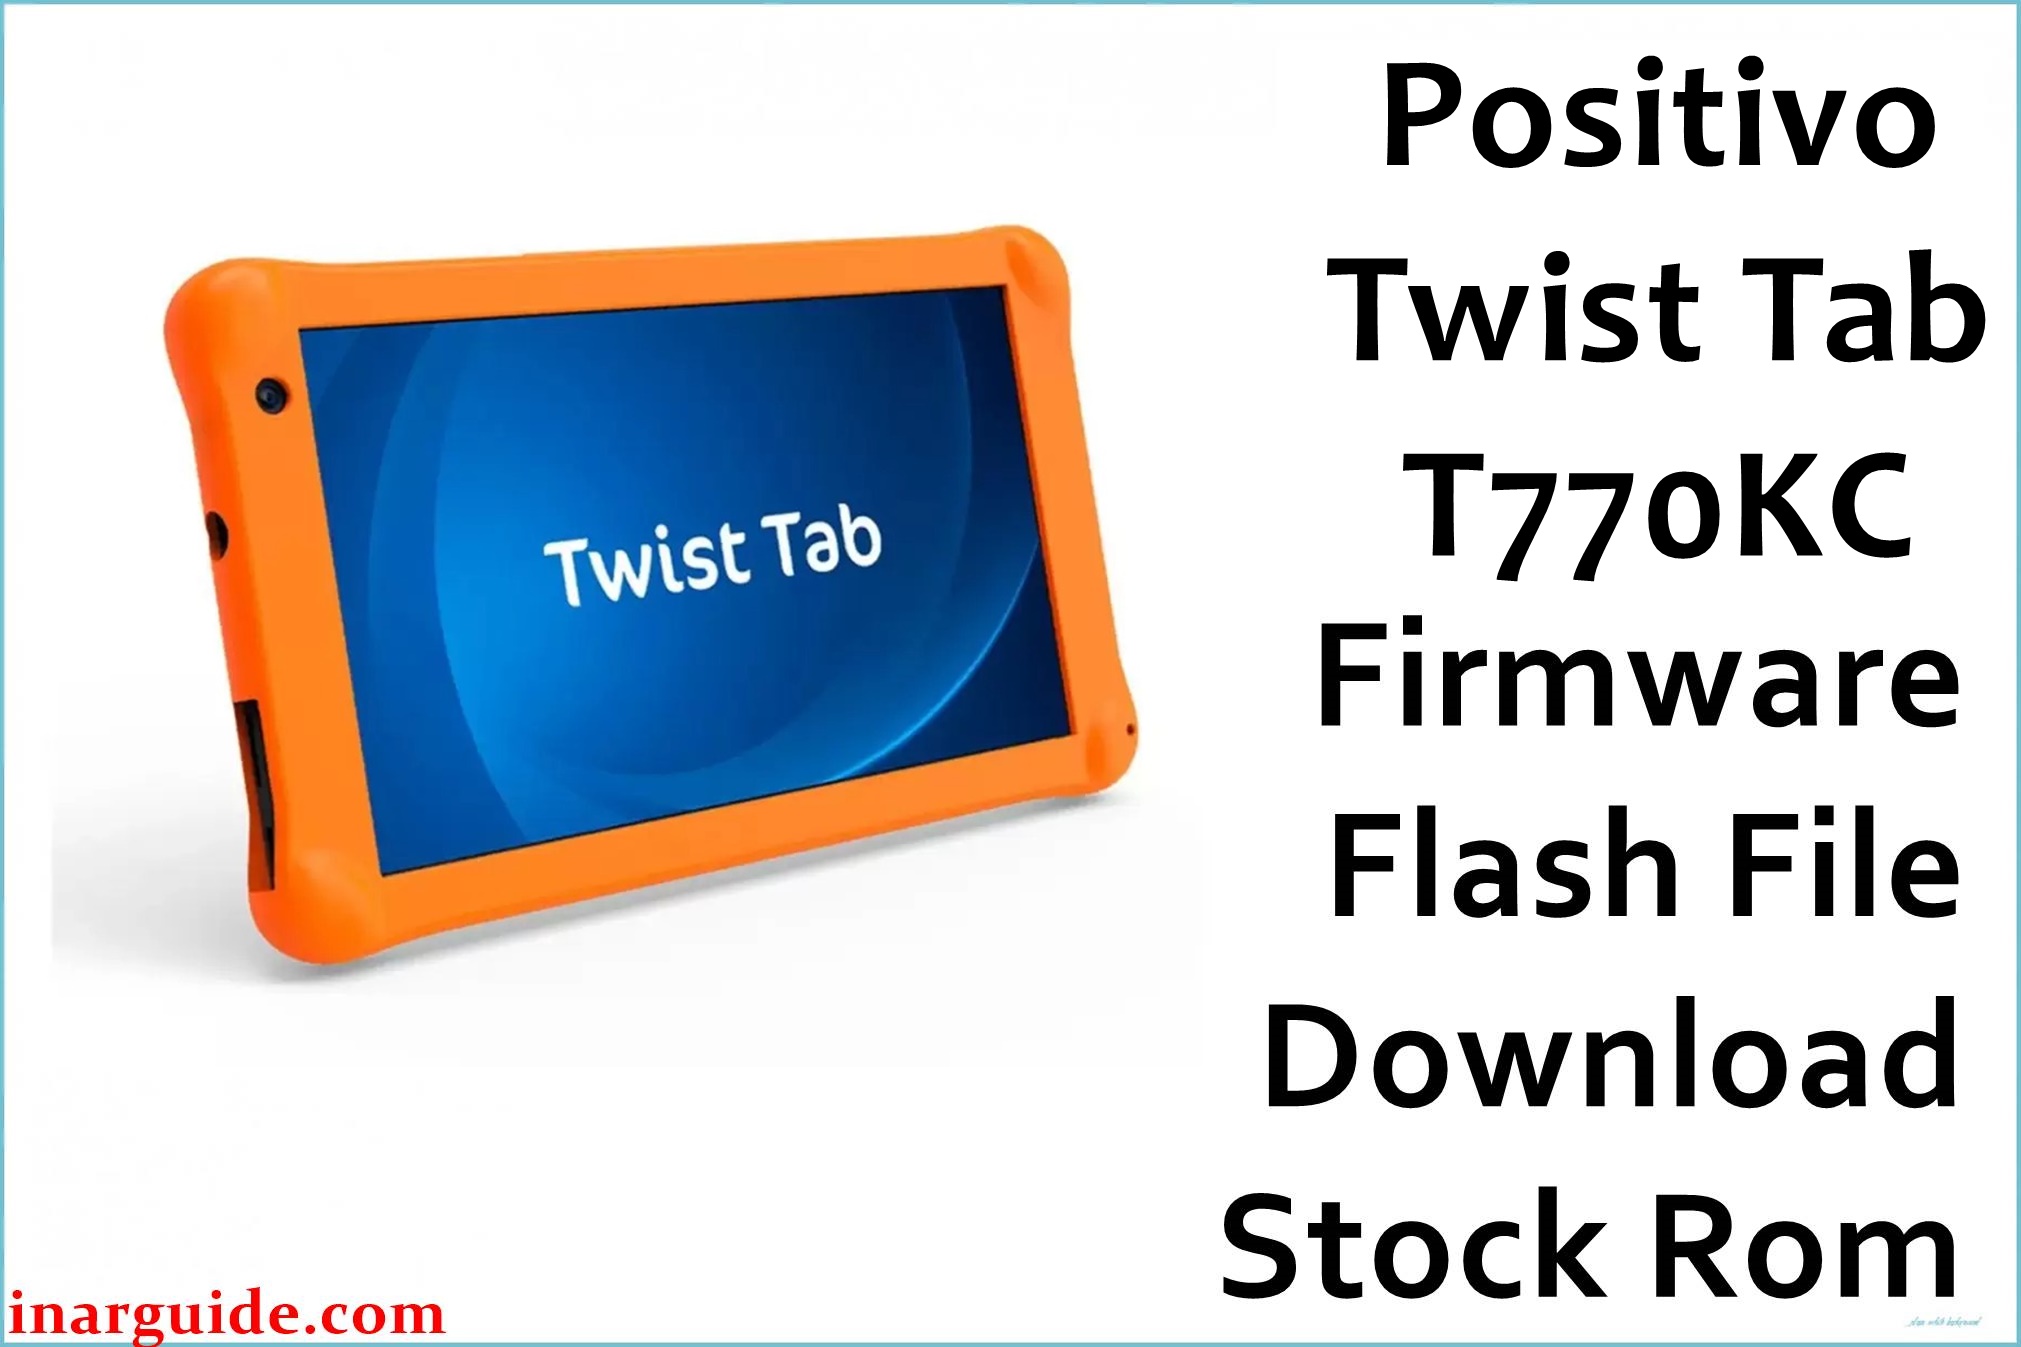 Positivo Twist Tab T770KC